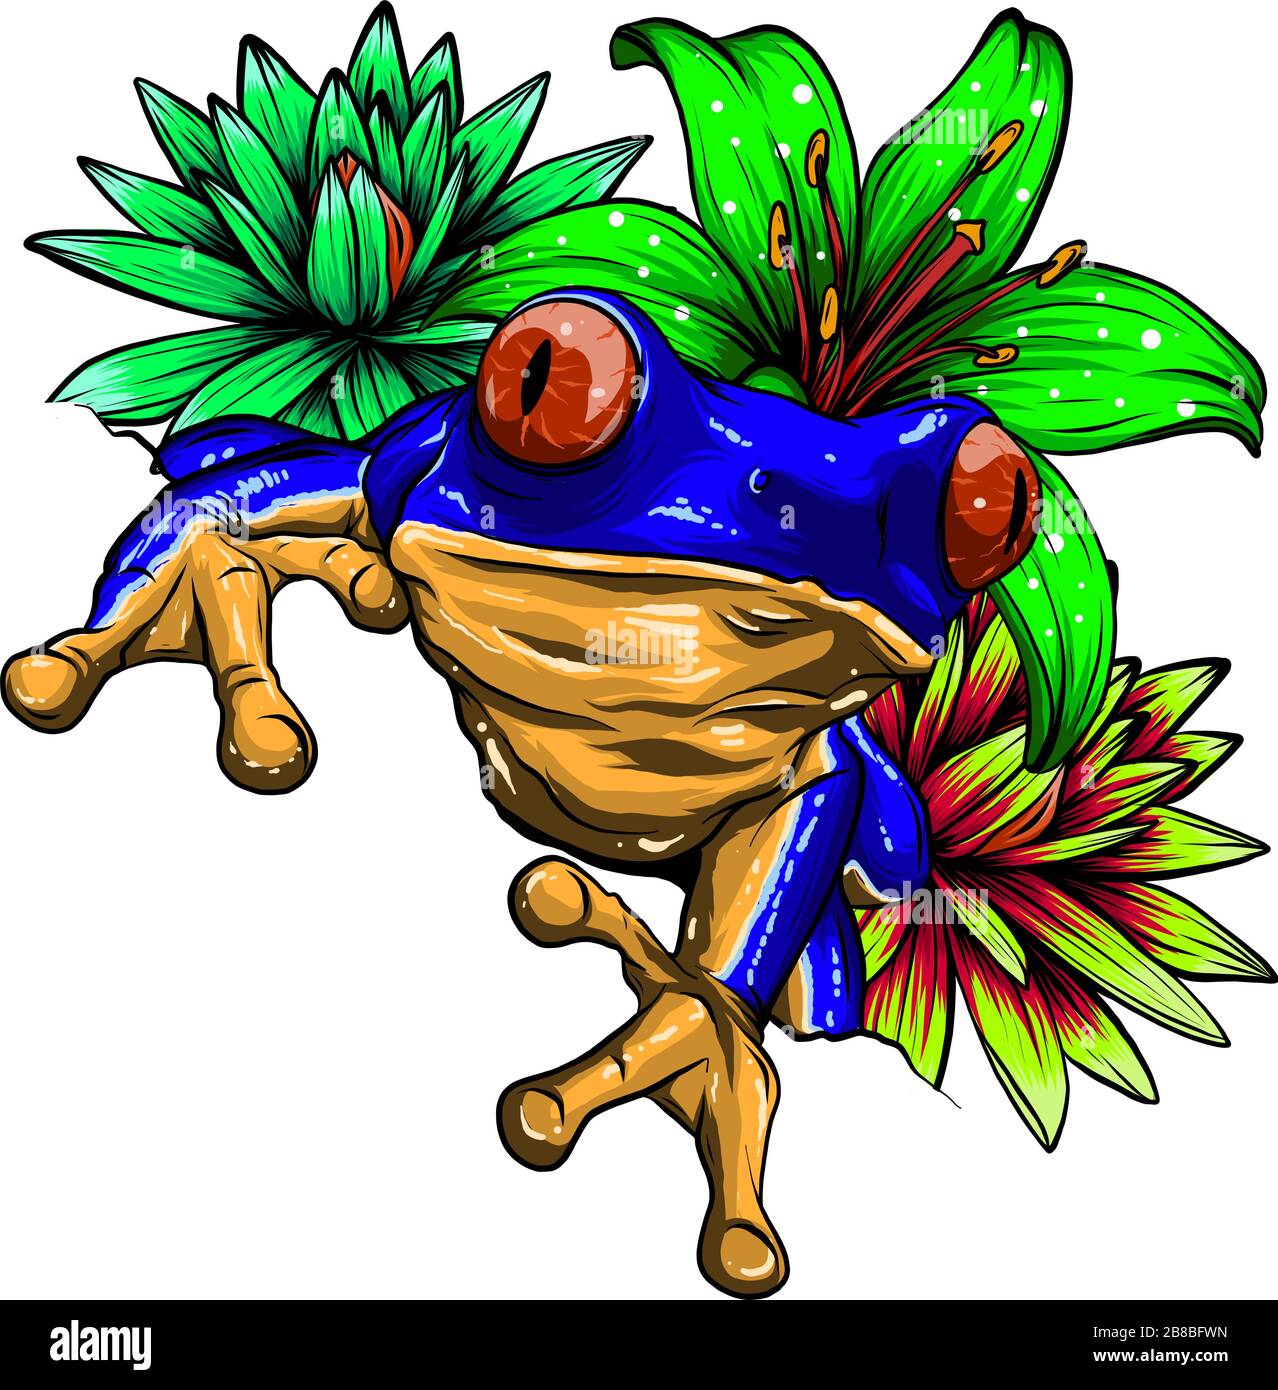 Grenouille tropicale avec fleurs illustration vectorielle Illustration de Vecteur